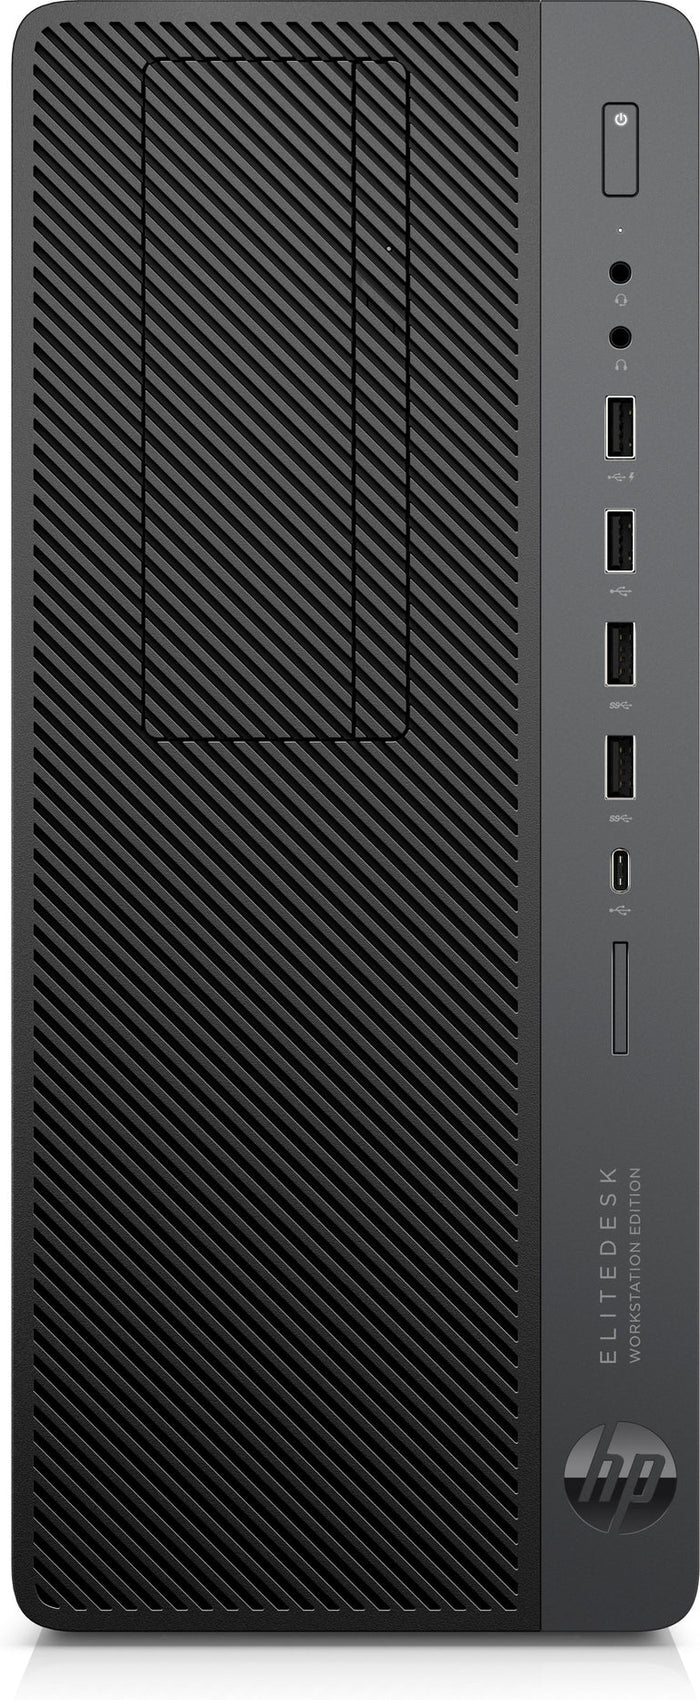 HP EliteDesk 800 G4 WKS Tower i7-8700 [Hexa] 3.20GHz USB-C DVD 16GB DDR4 1TB NVMe + 256GB NVMe [Marked Casing]